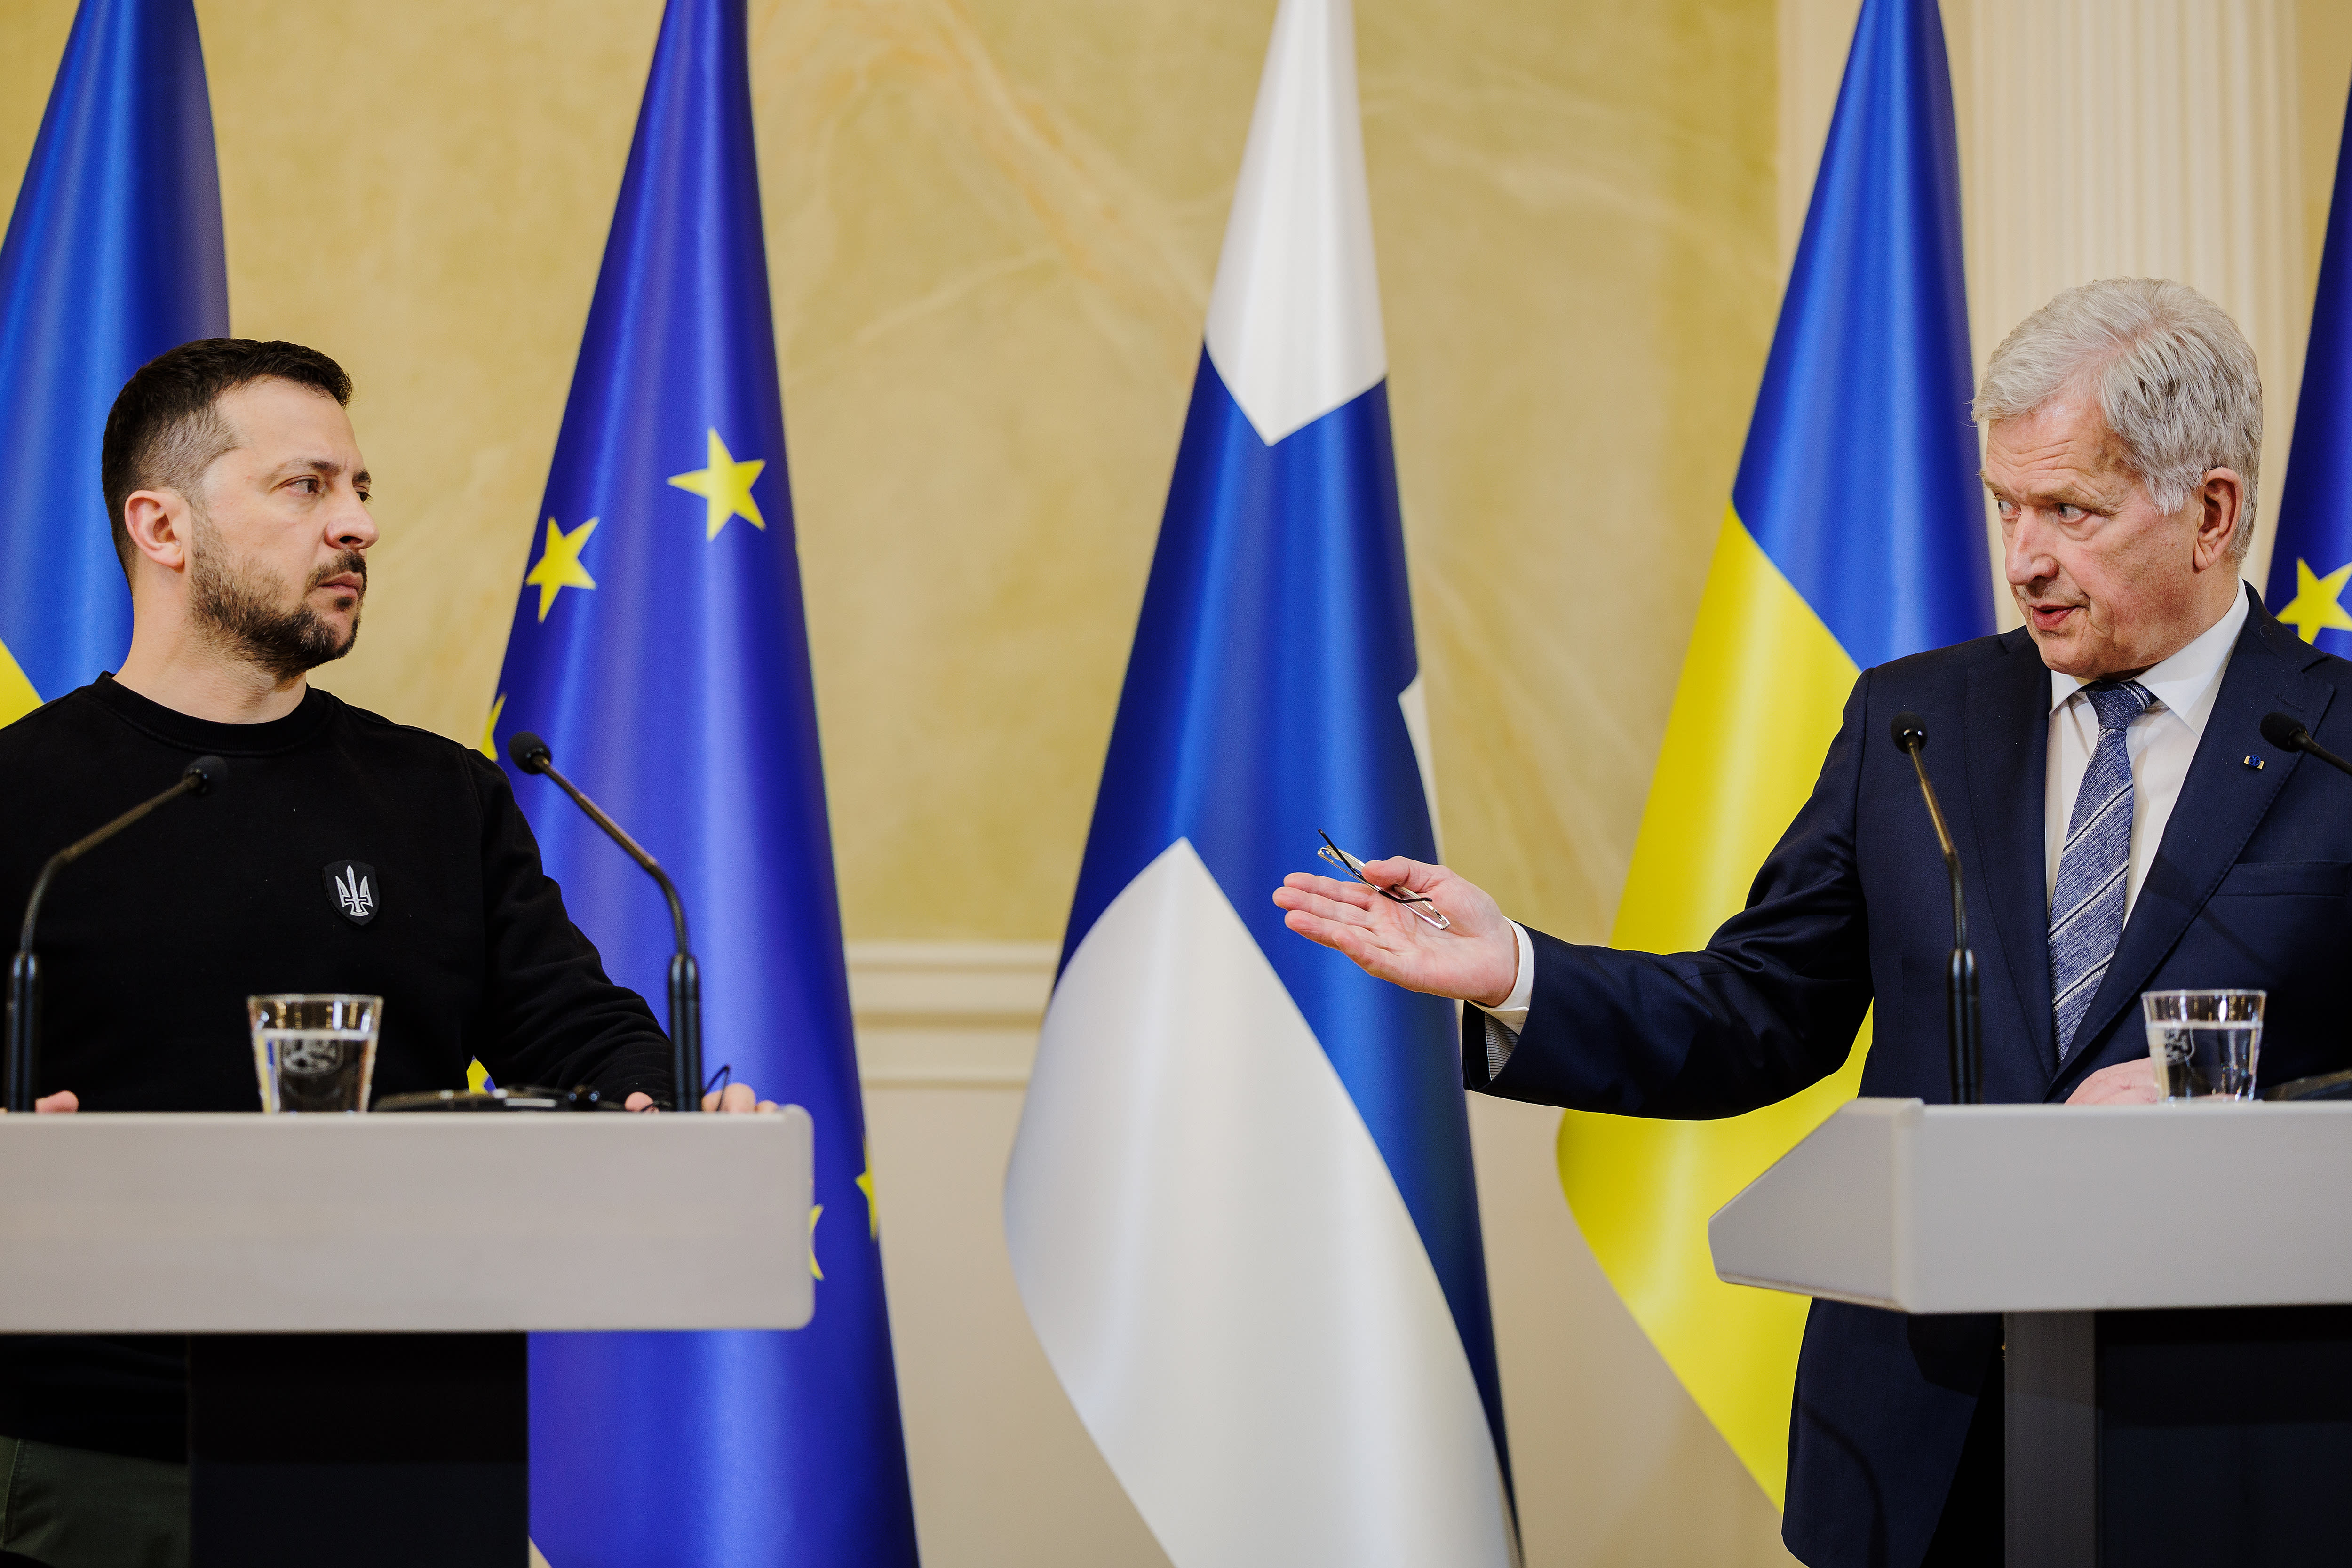 Der ukrainische Präsident Zelenski dankt Finnland für die kontinuierliche Unterstützung, fordert mehr Waffen